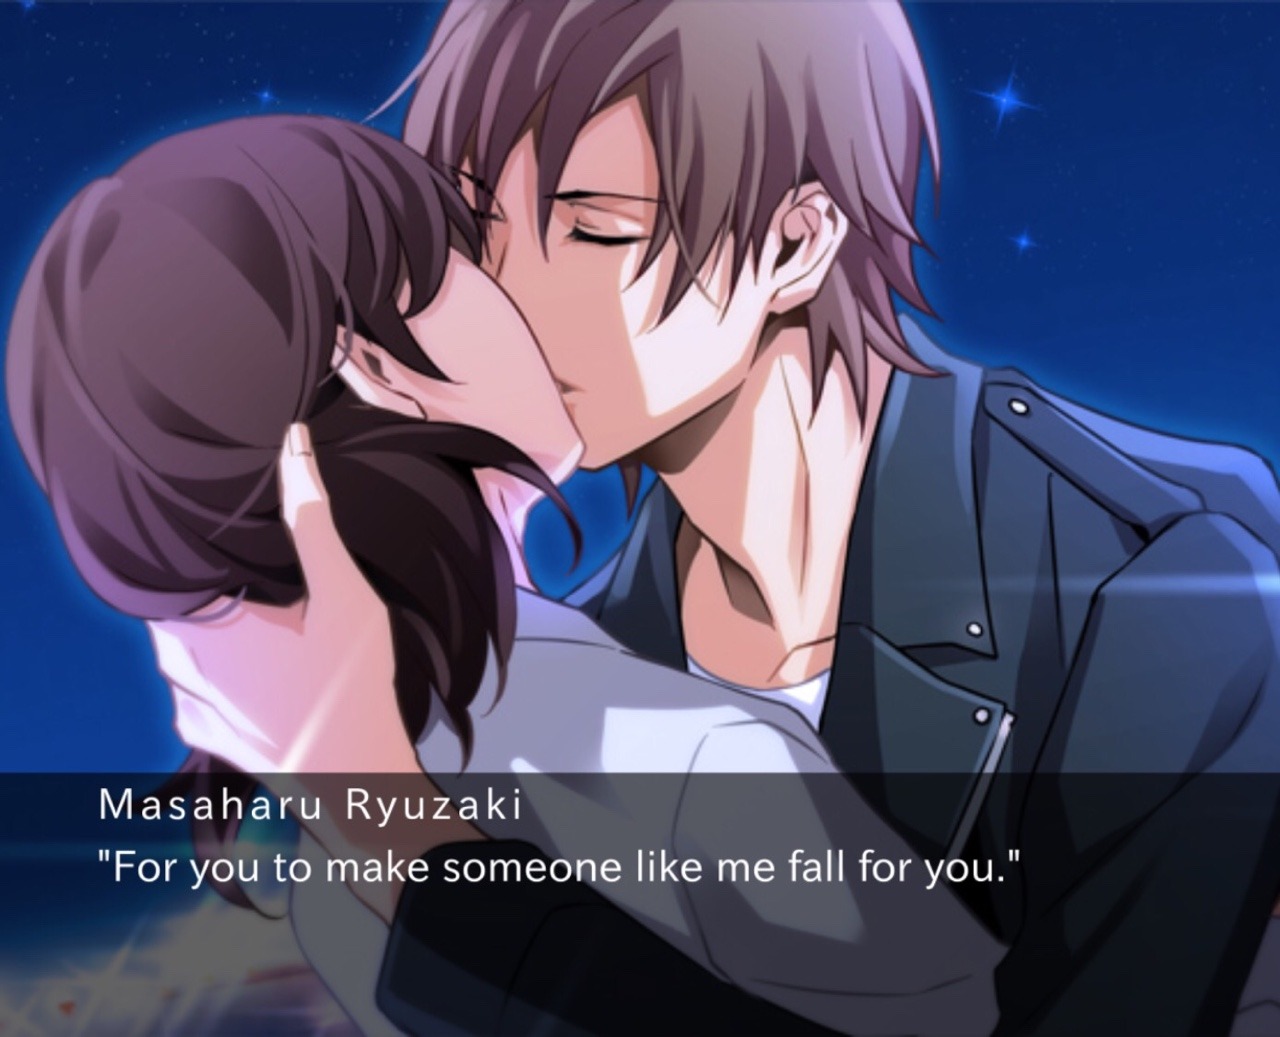 Dangerous Seduction  Masaharu Ryuzaki Review: Falling for an